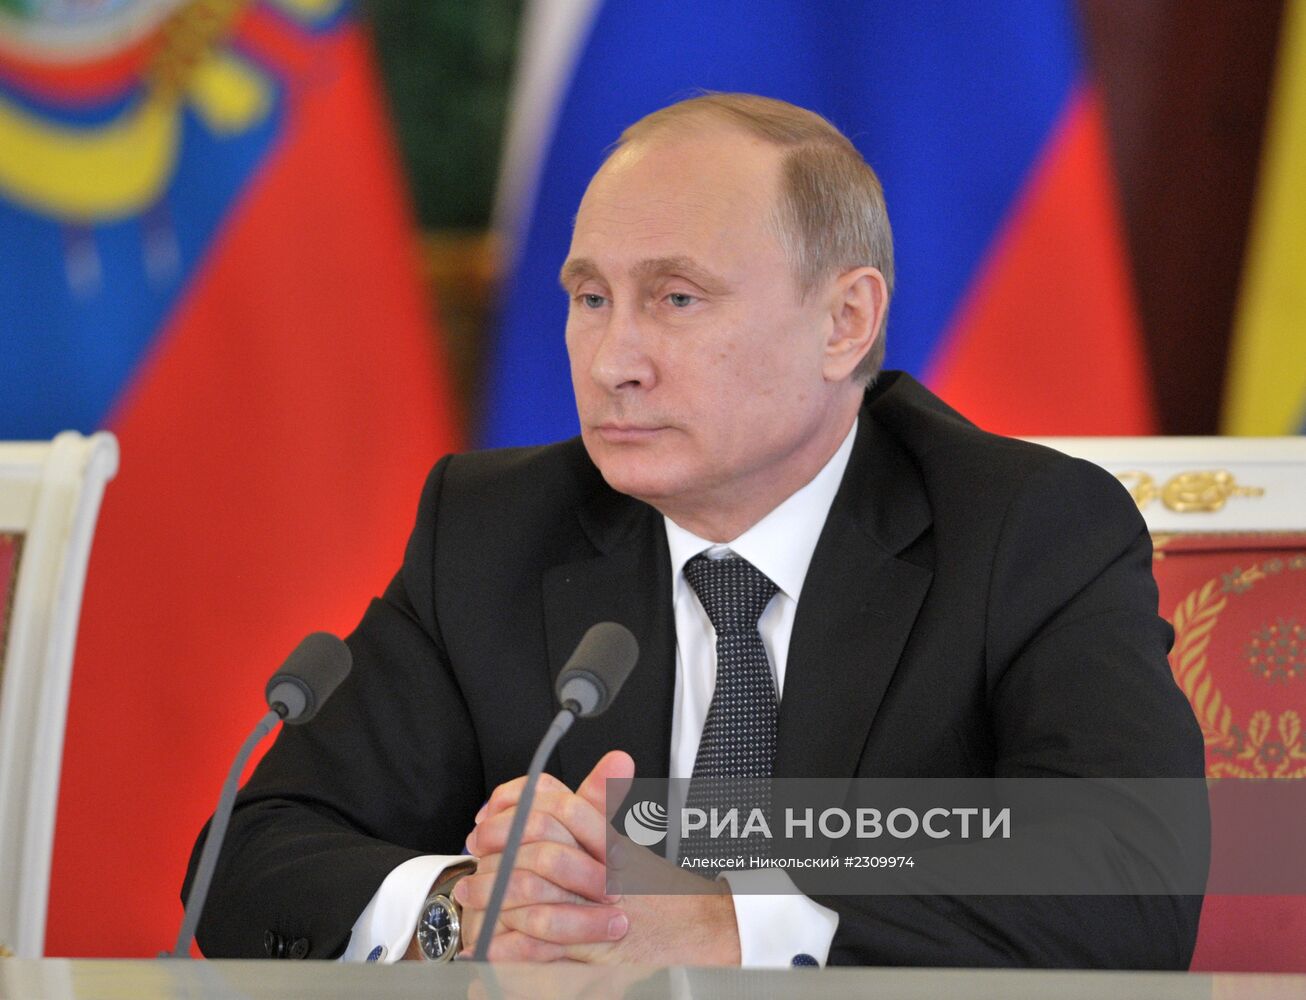 В.Путин провел переговоры с Р.Корреа в Кремле